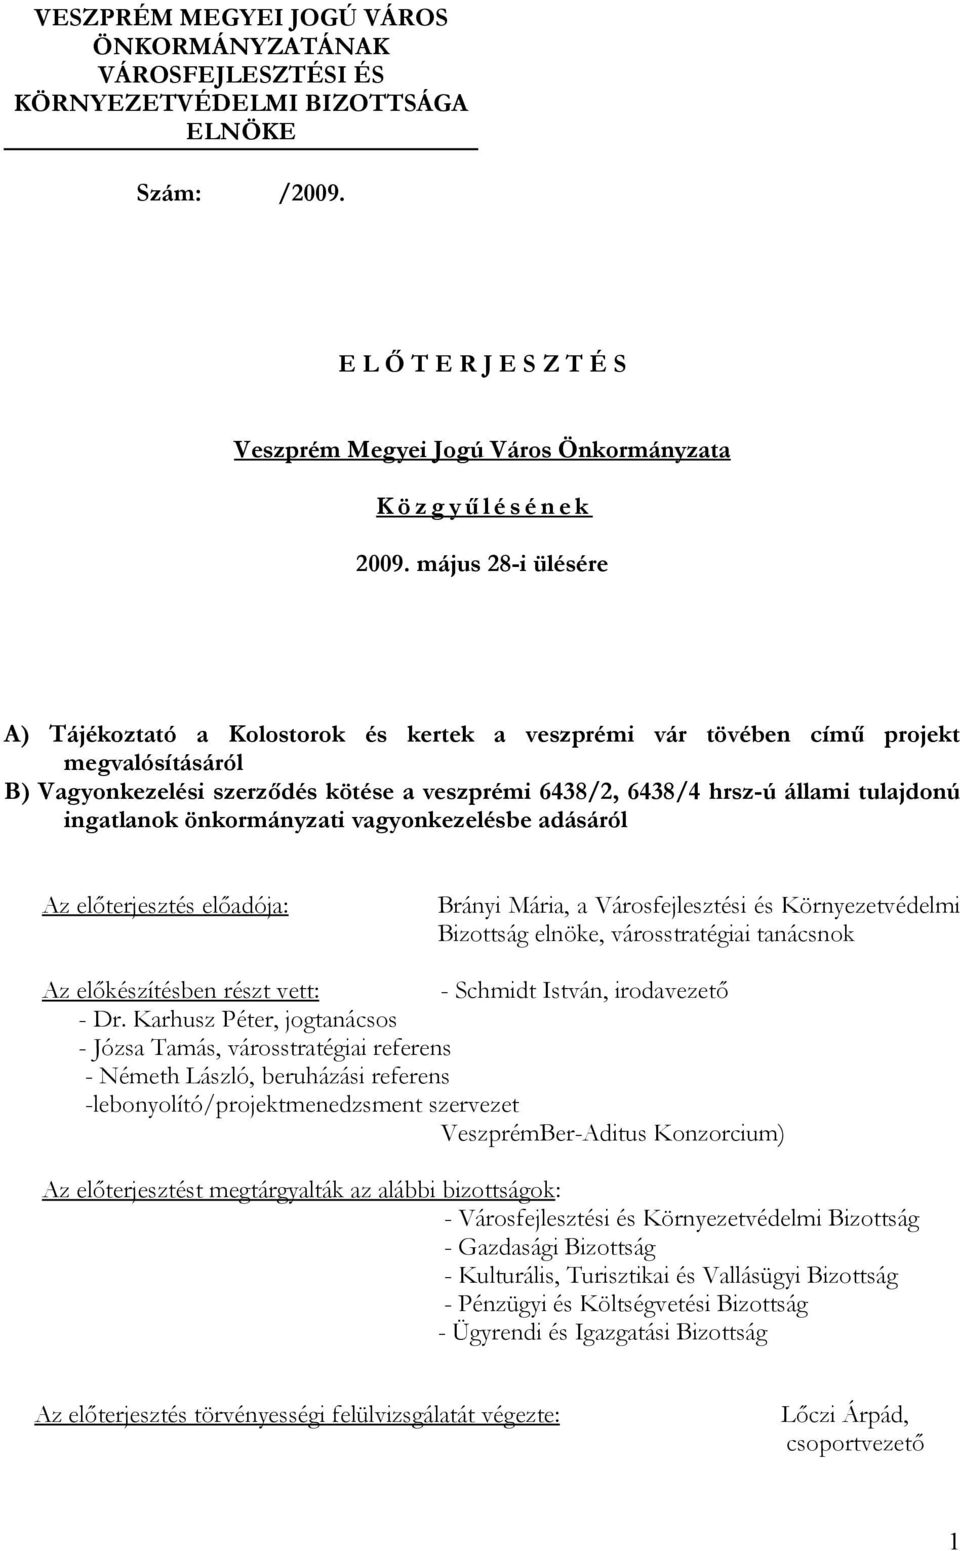 május 28-i ülésére A) Tájékoztató a Kolostorok és kertek a veszprémi vár tövében című projekt megvalósításáról B) Vagyonkezelési szerződés kötése a veszprémi 6438/2, 6438/4 hrsz-ú állami tulajdonú